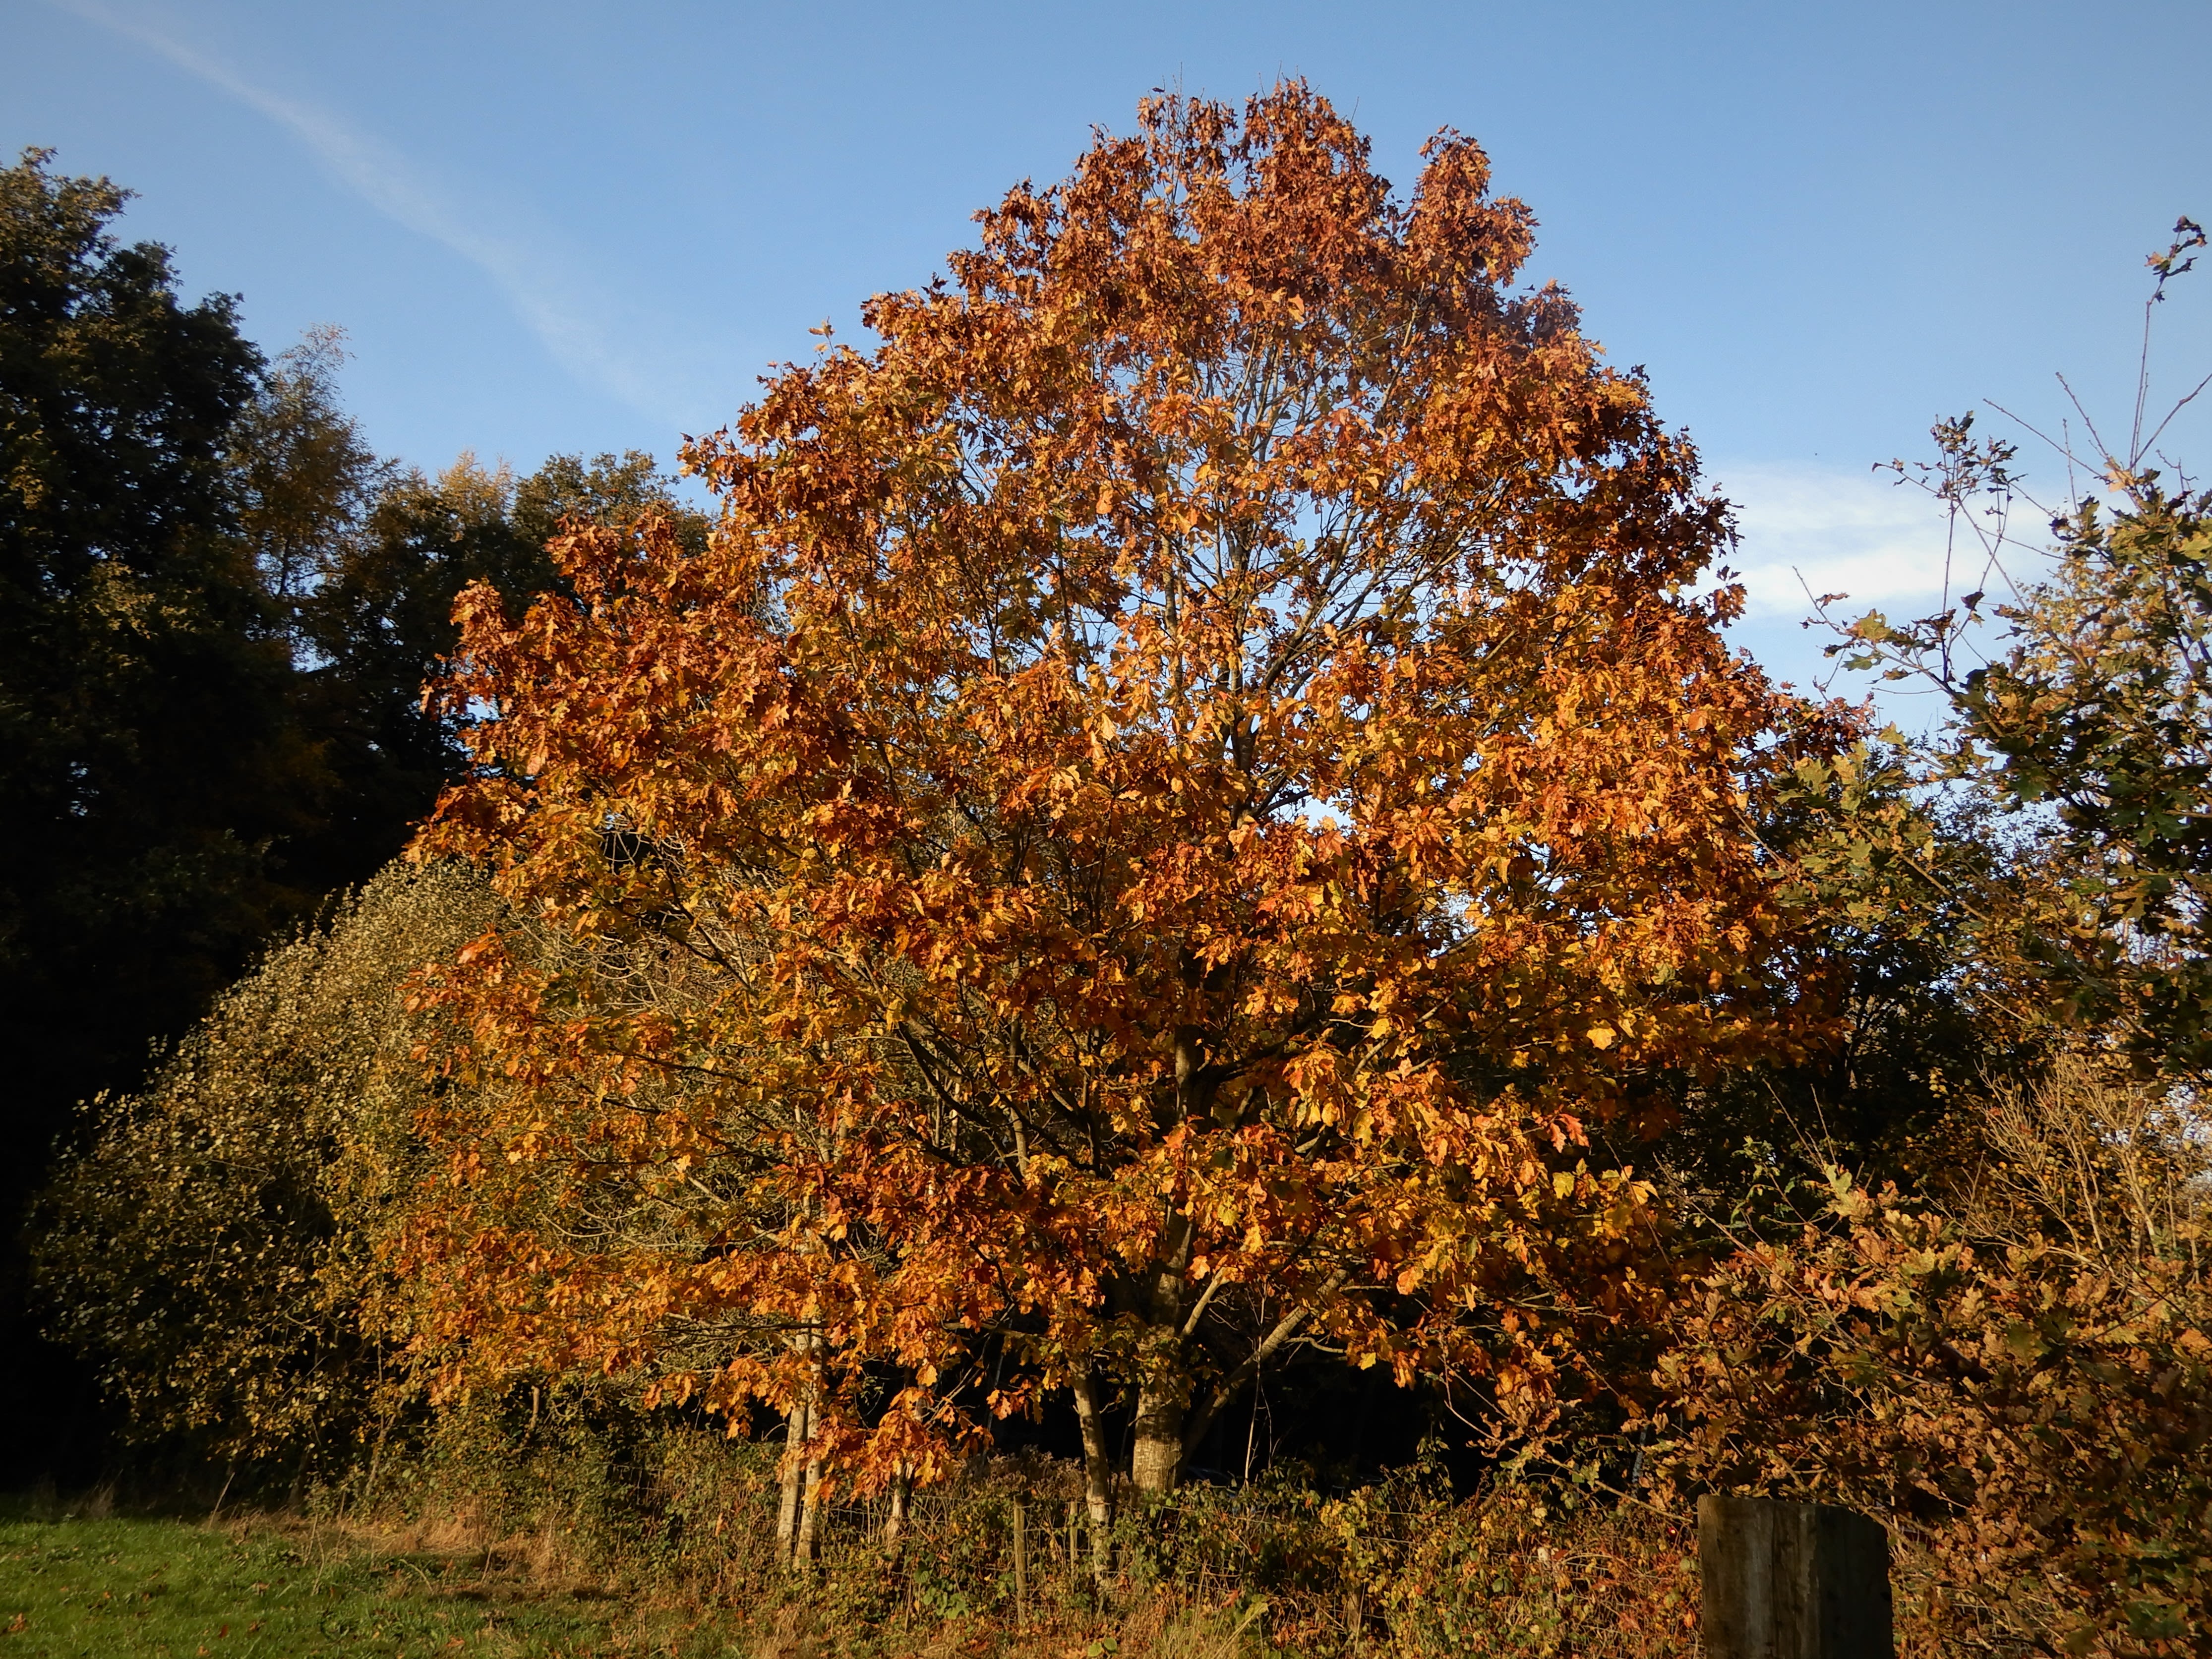 De kastanjeboom verkleurt al vroeg in de herfst. Foto: Stijntje ten Caat.